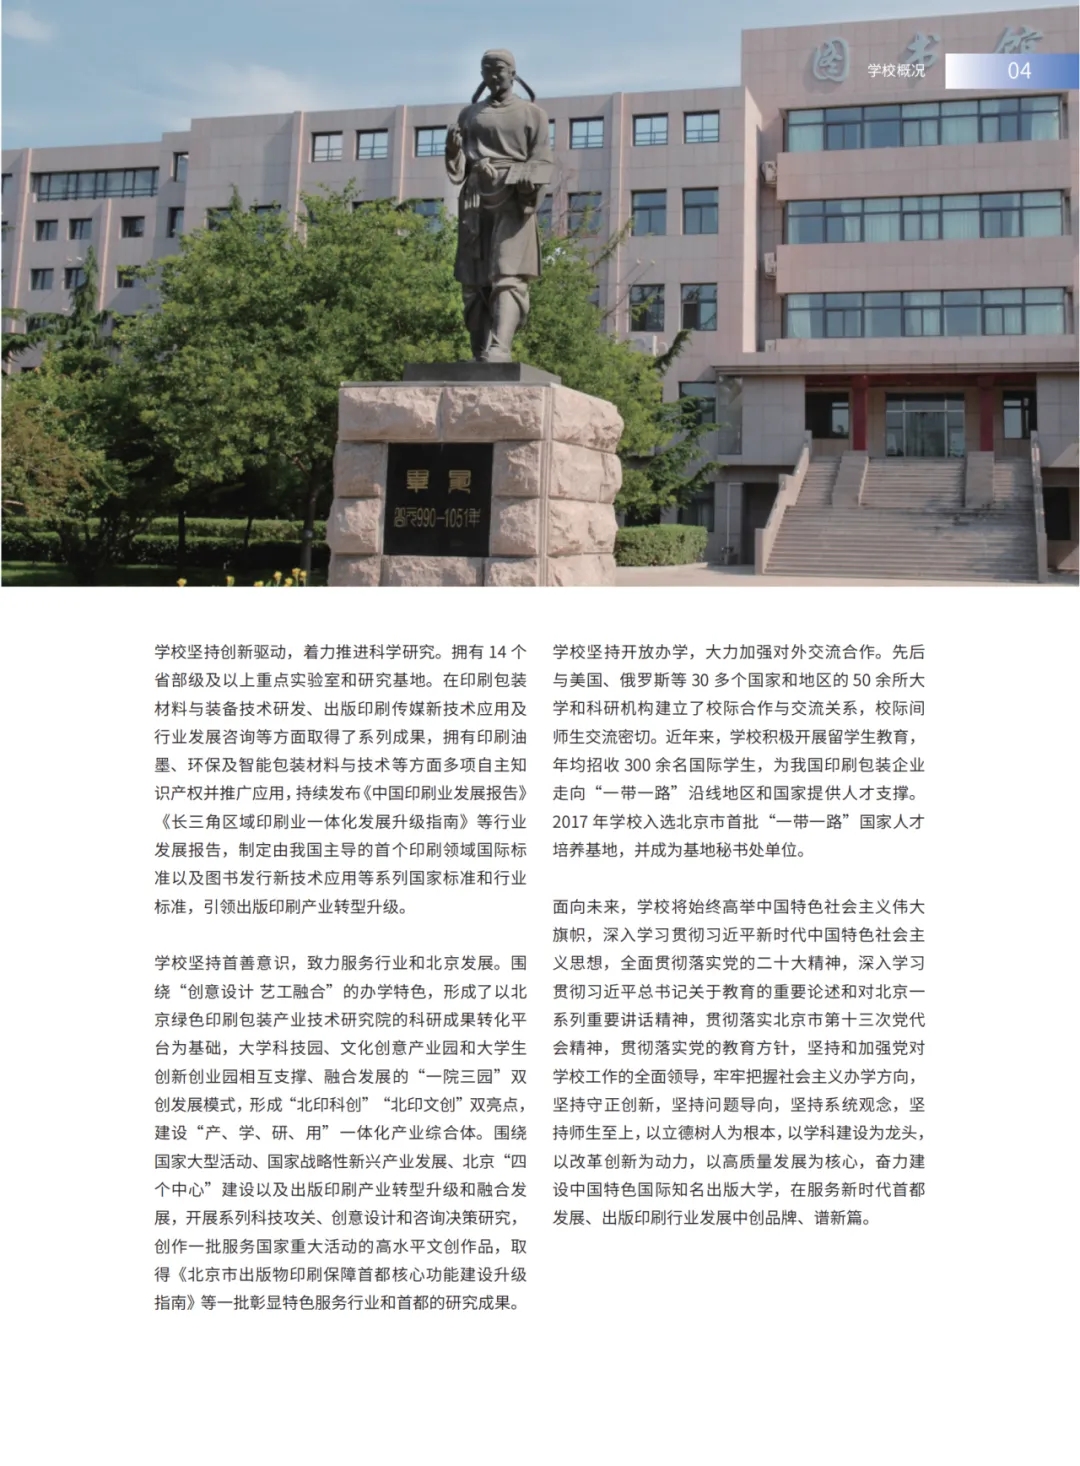 北京印刷学院2024年报考指南